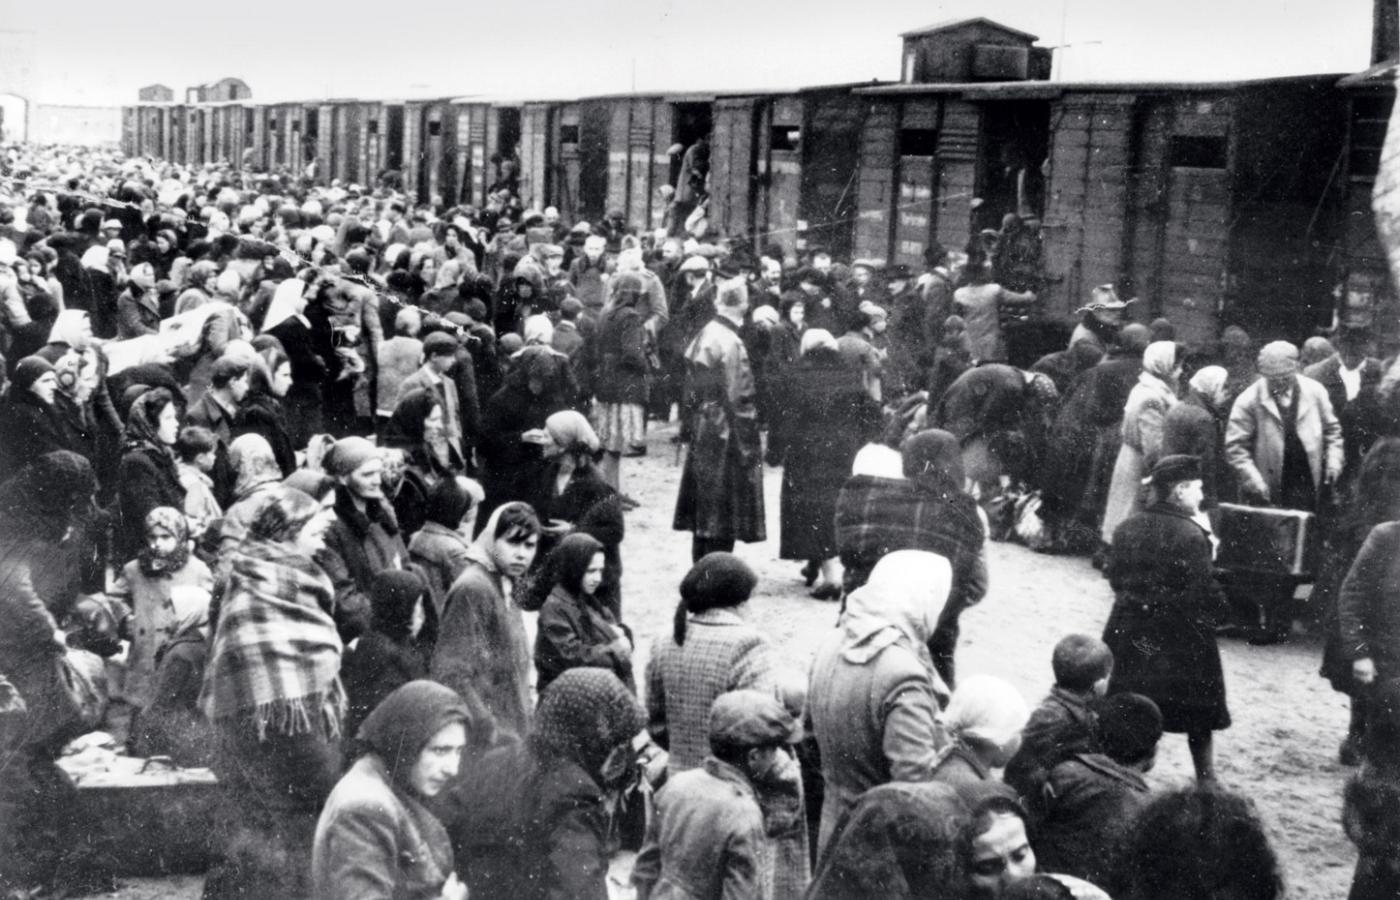 Transport węgierskich Żydów na rampie obozu koncentracyjnego w Auschwitz, 1944 r.